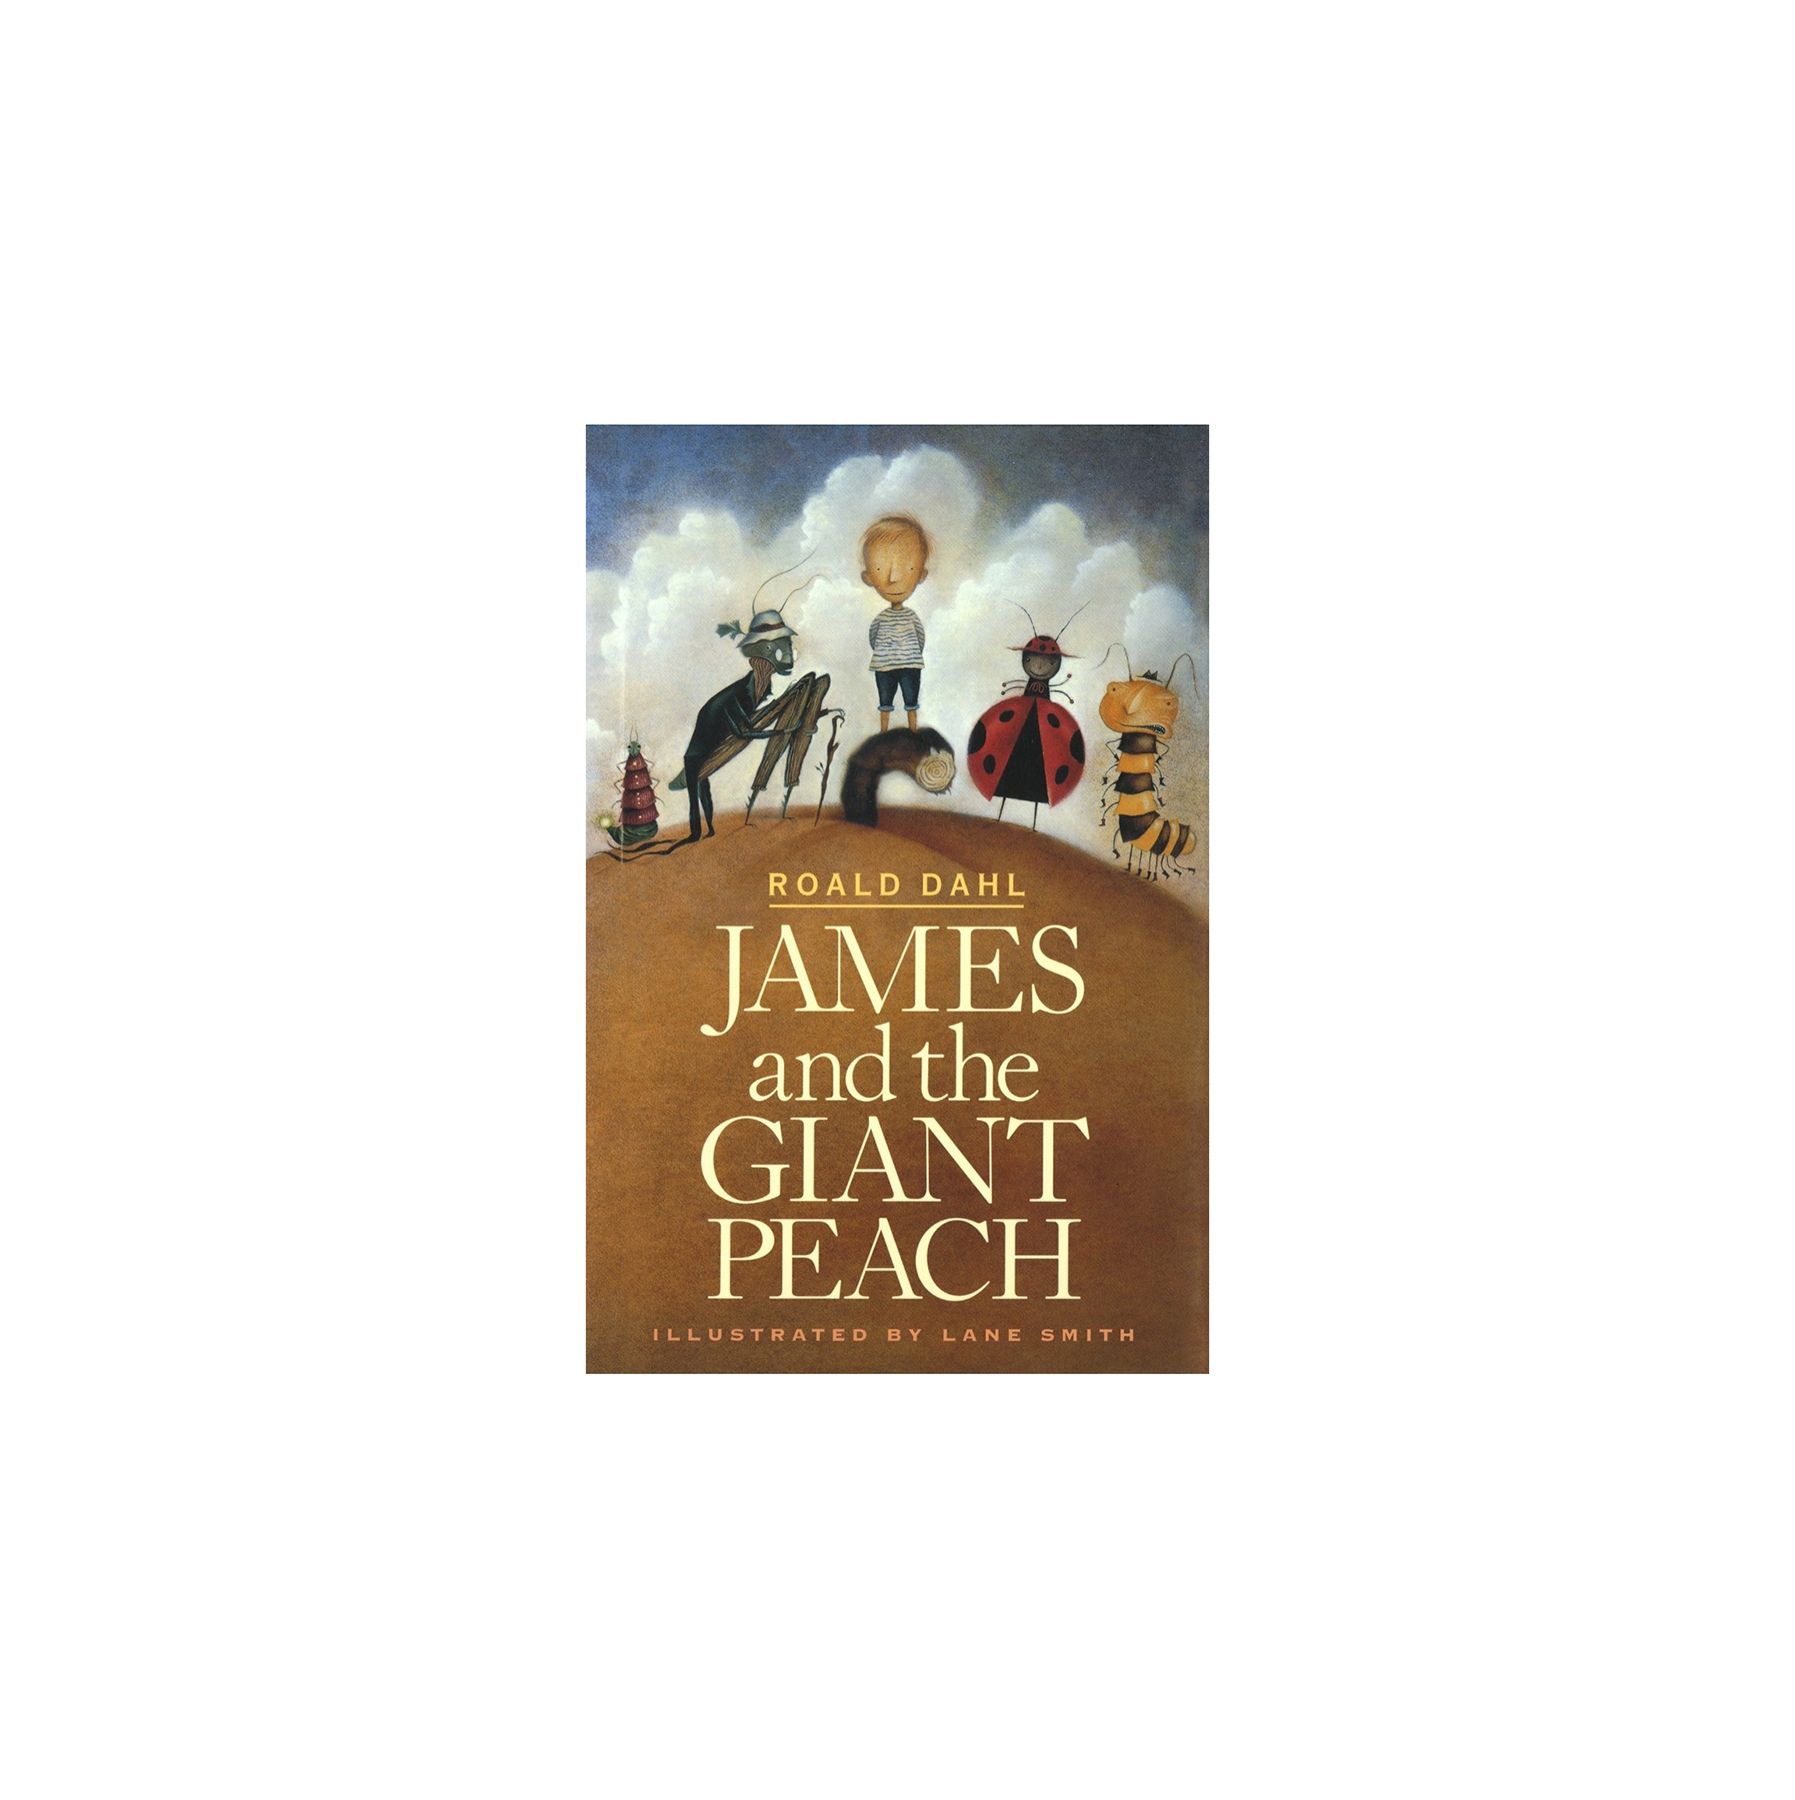 James and the Giant Peach, kirjoittanut Roald Dahl